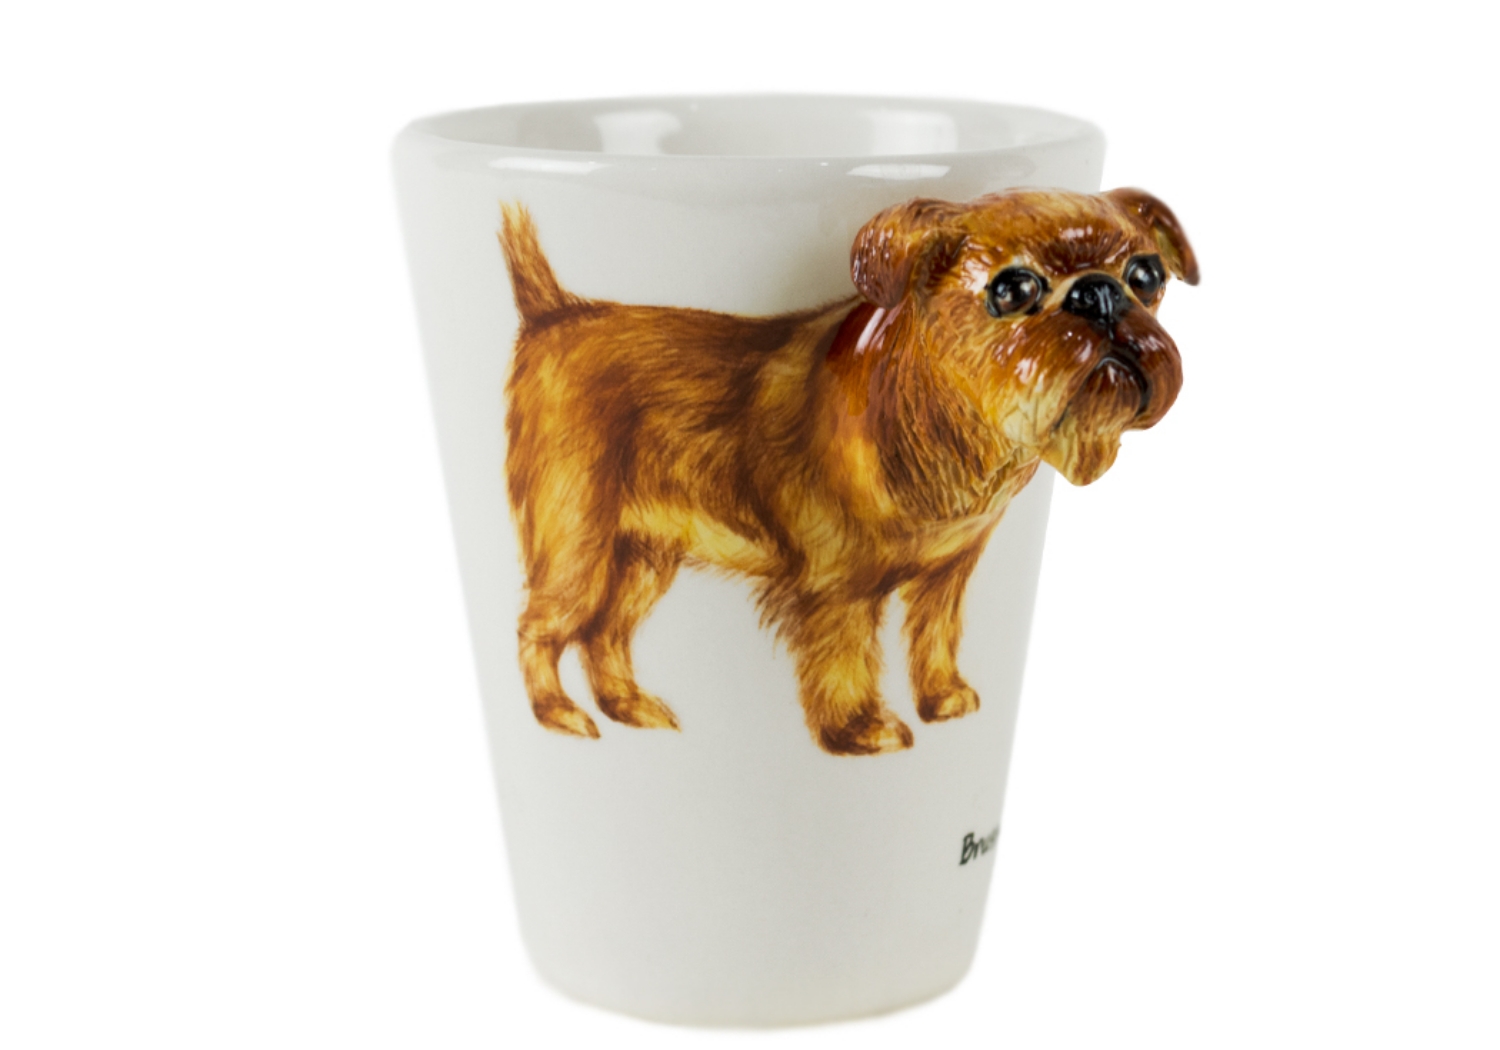 Brussels Griffon Coffee Mug